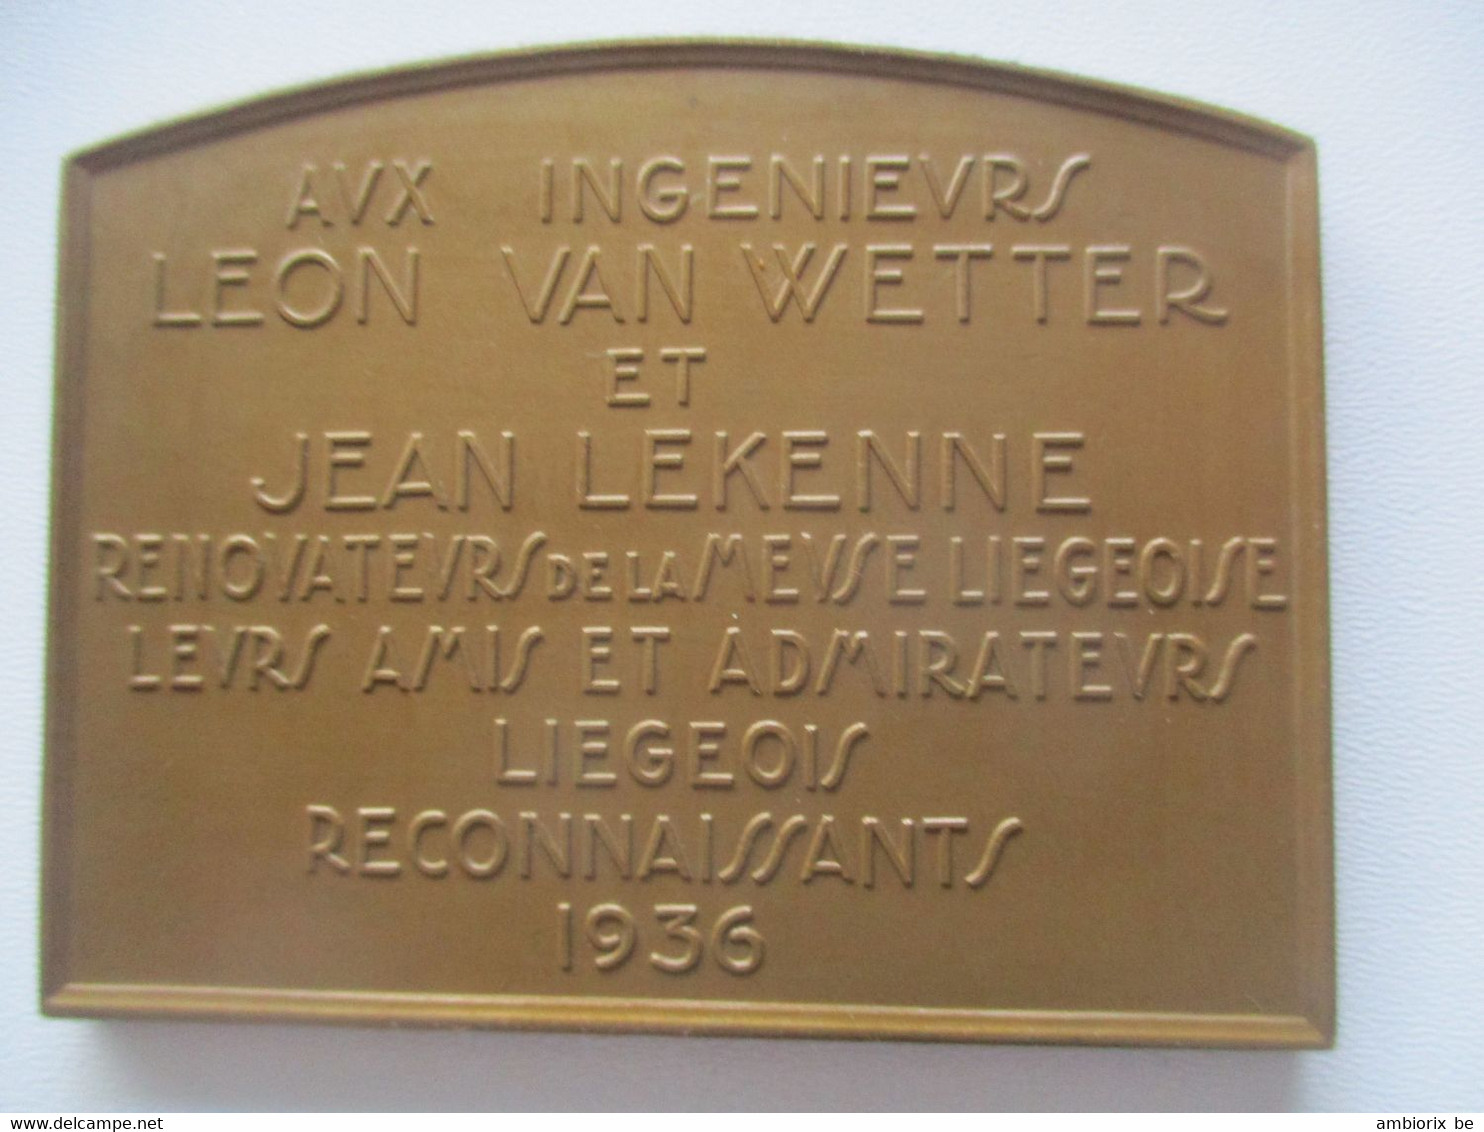 Le Barrage De Monsin à Liège - Aux Ingénieurs Léon Van Wetter Et Jean Lekenne - Turísticos